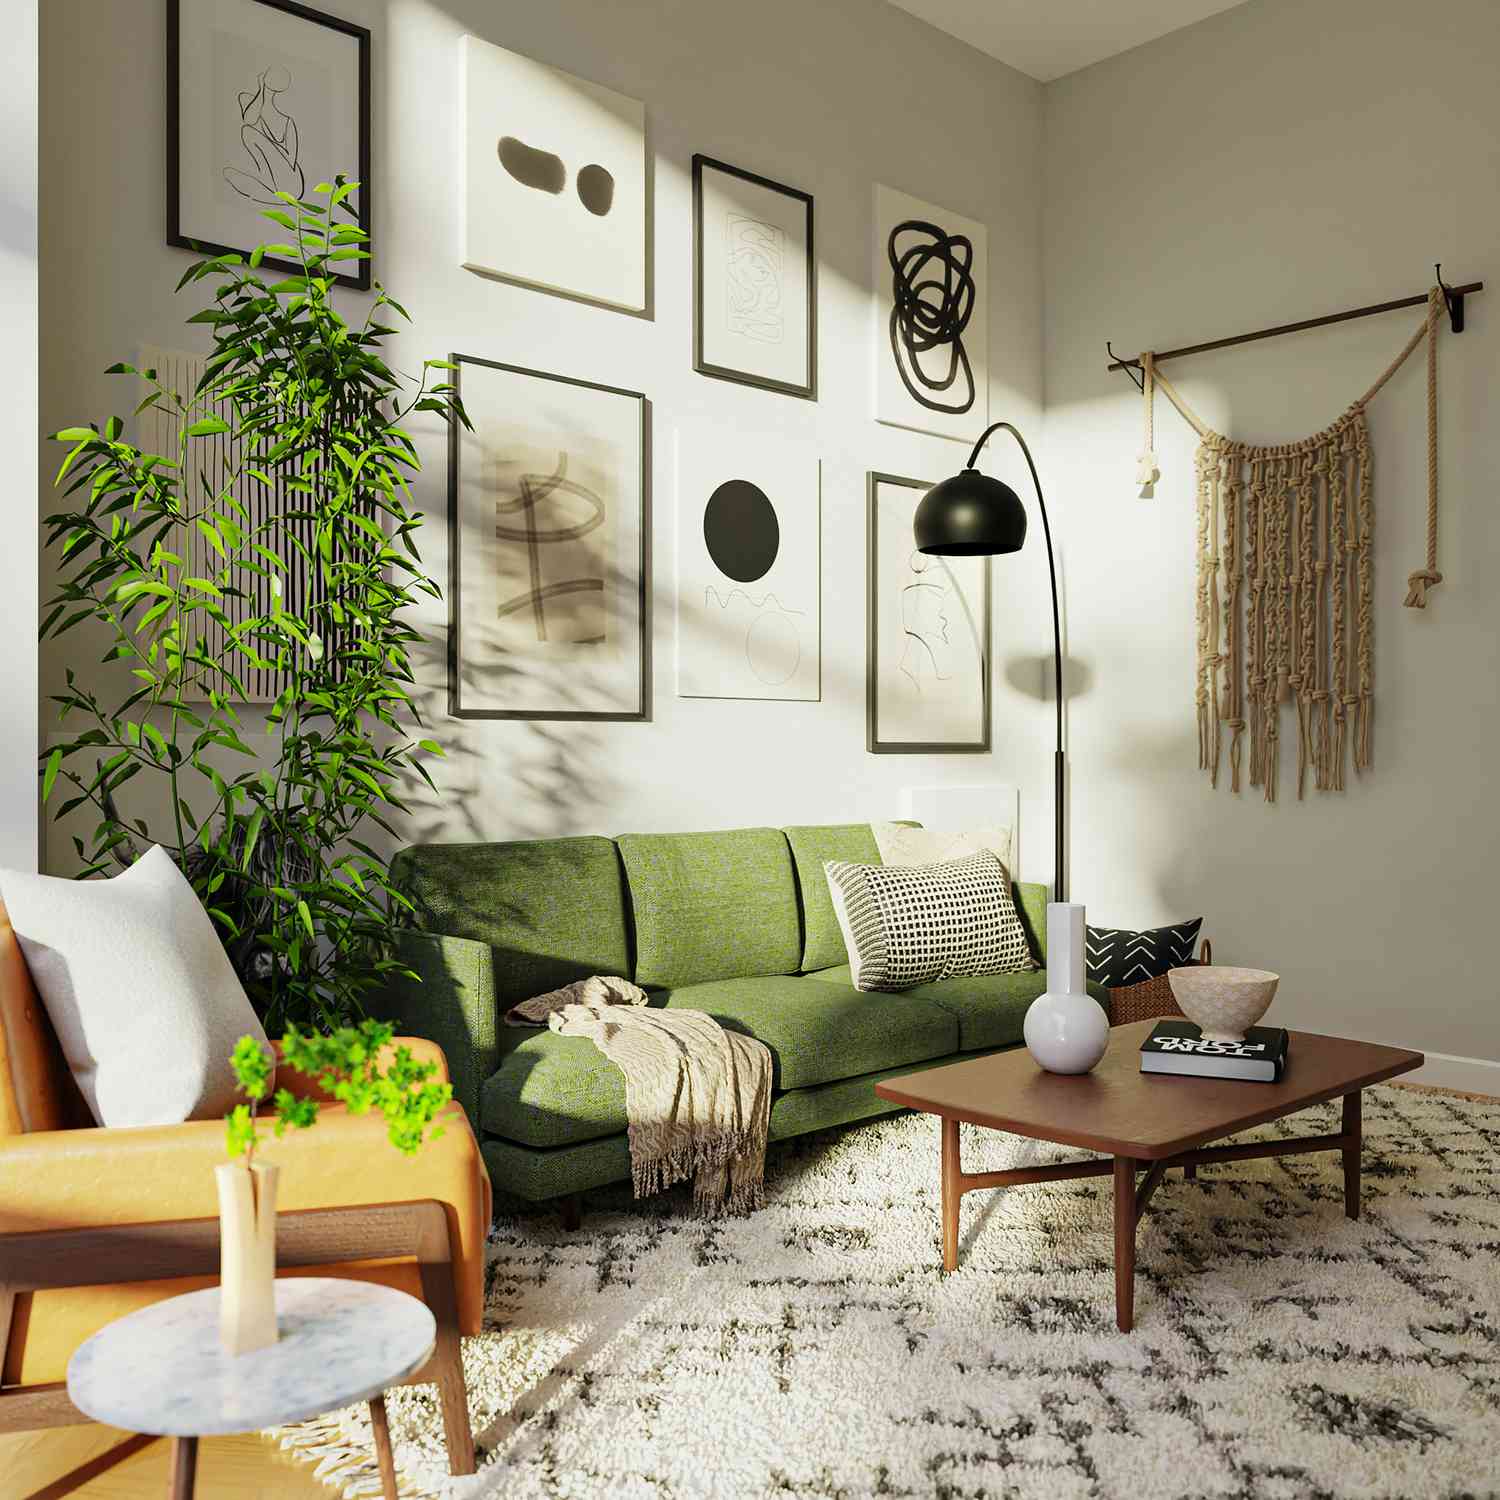 Wohnzimmer mit grünem Sofa, schwarzen Akzenten und grüner Pflanze